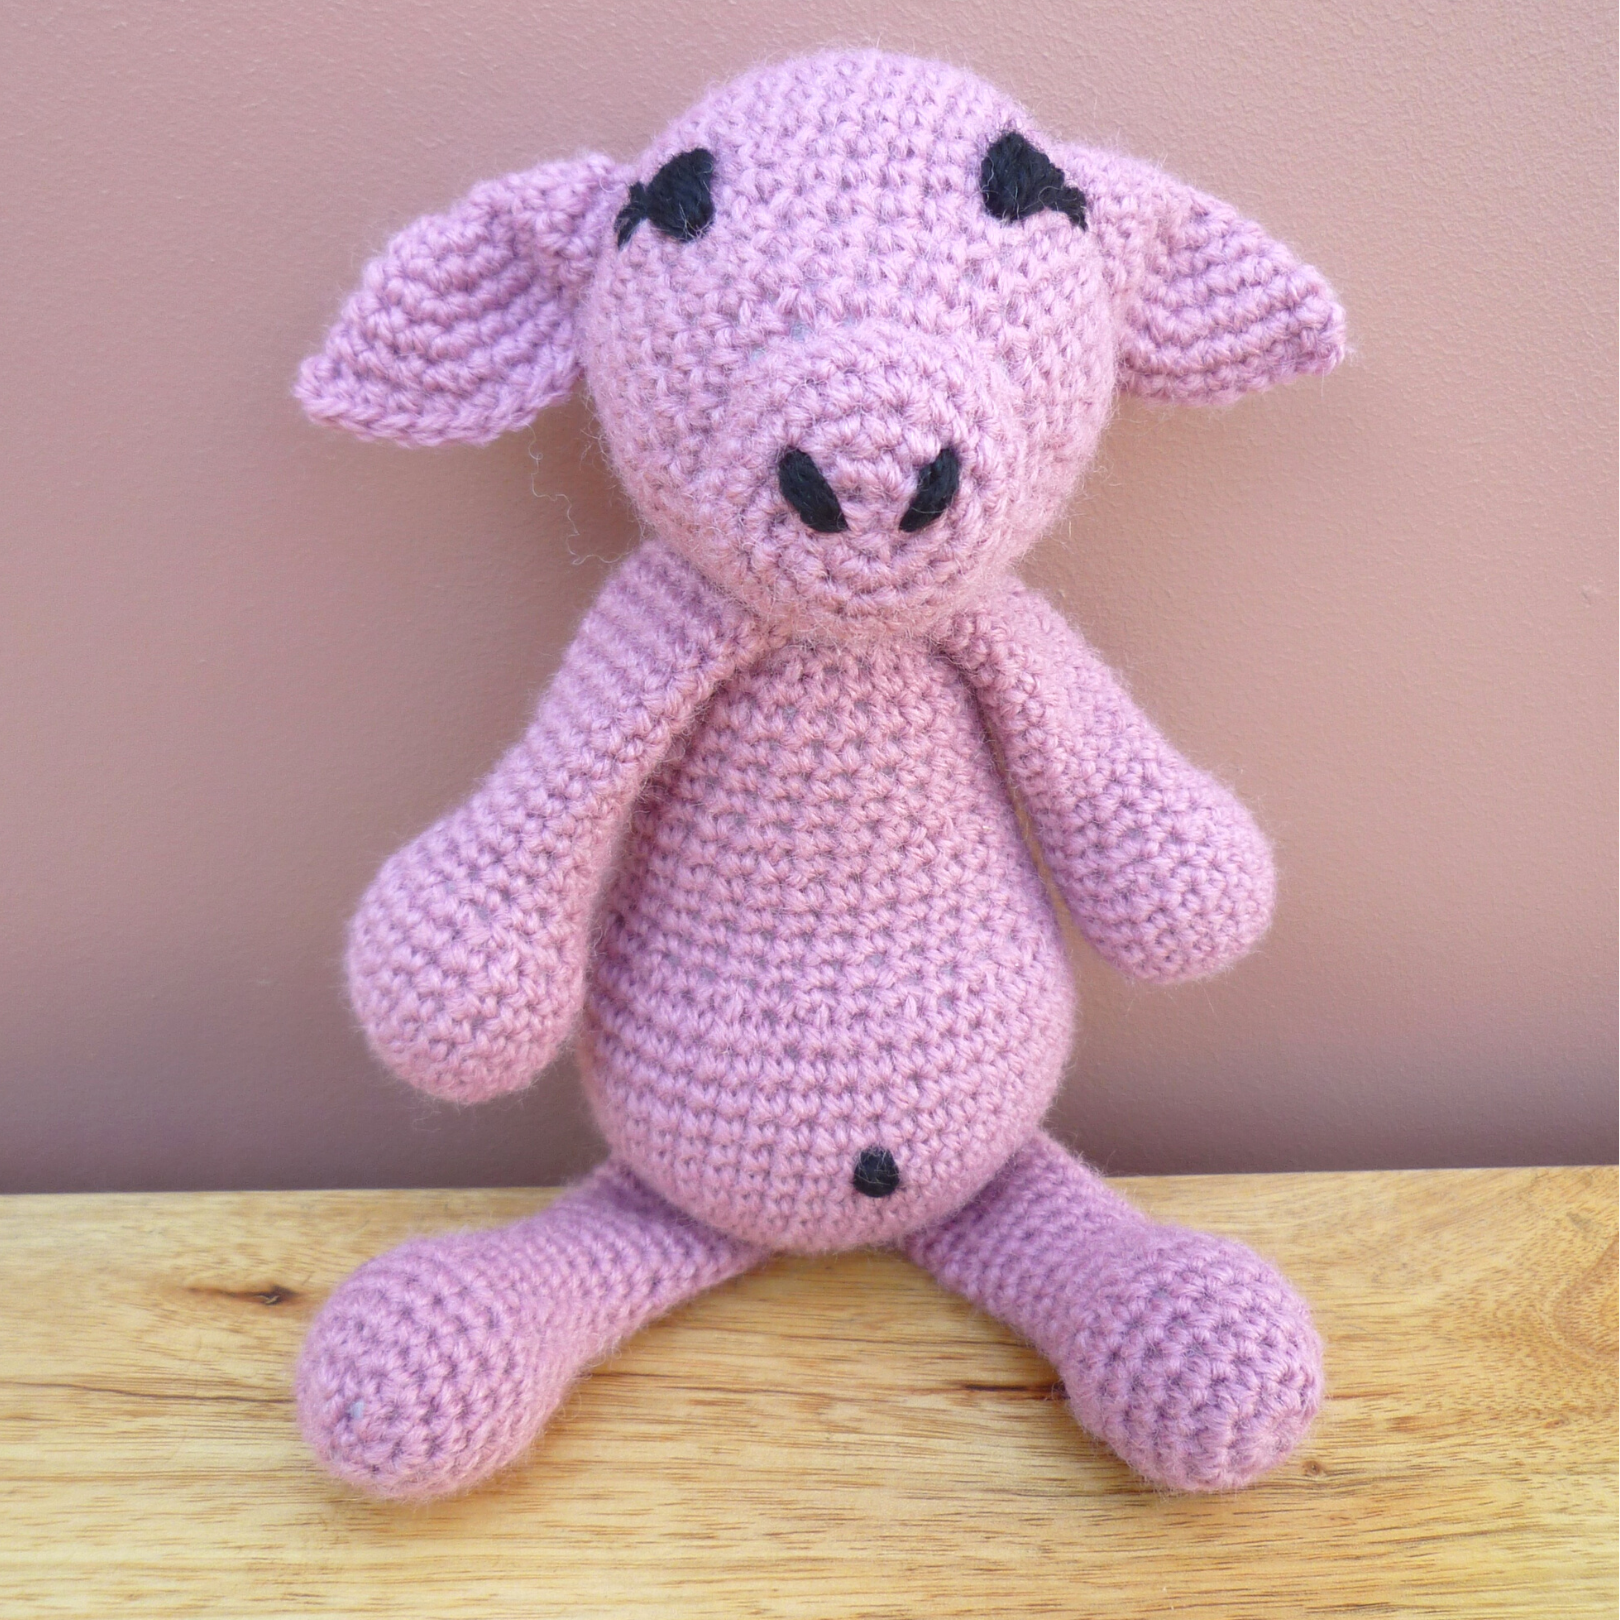 Handmade Crochet: Honey the Pig